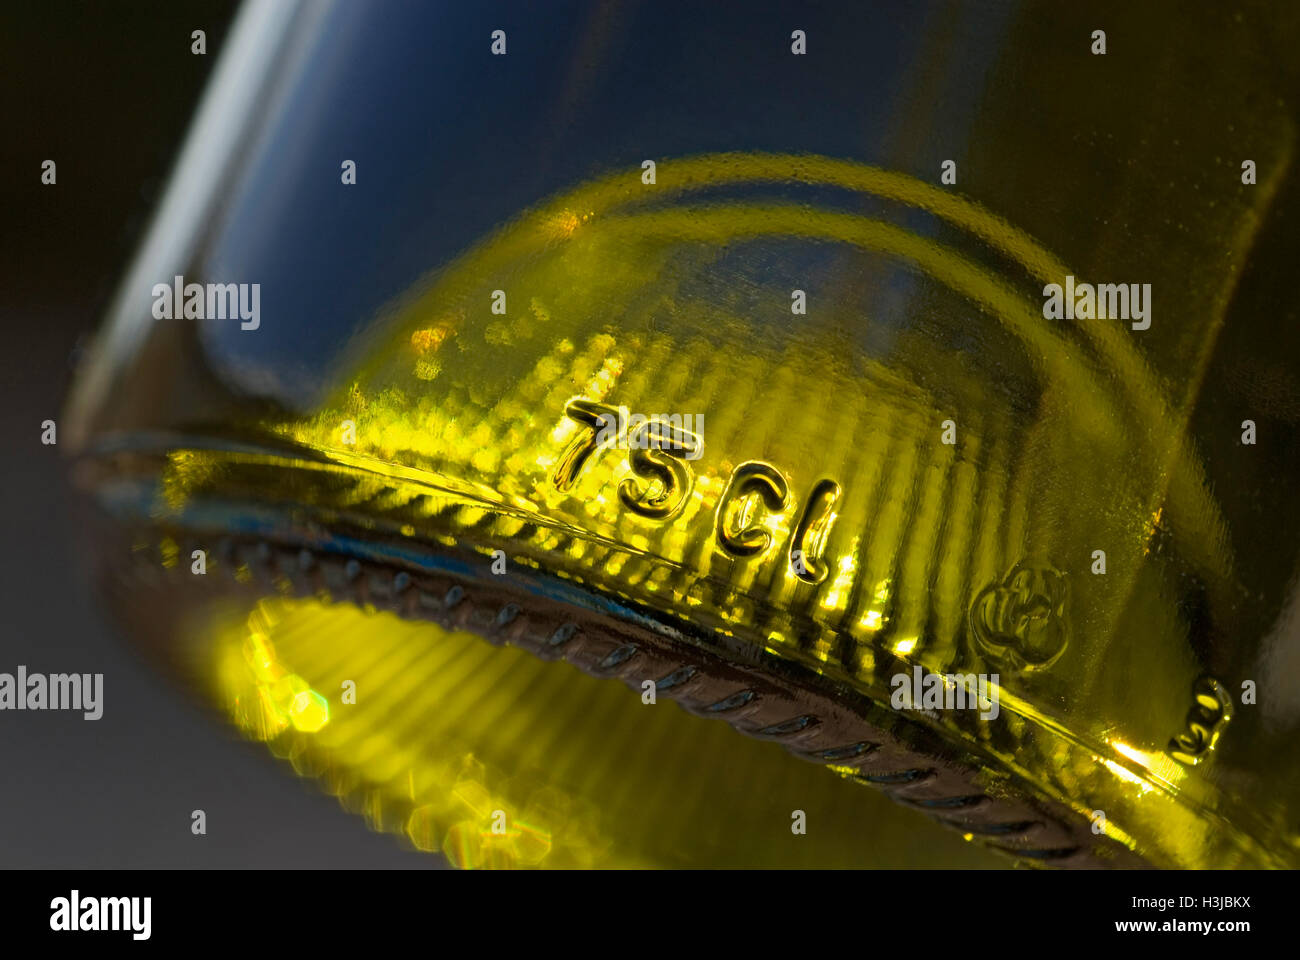 Cerca de 75 cl de capacidad vidrio grabado en relieve en la parte inferior de la botella de vino estándar Foto de stock